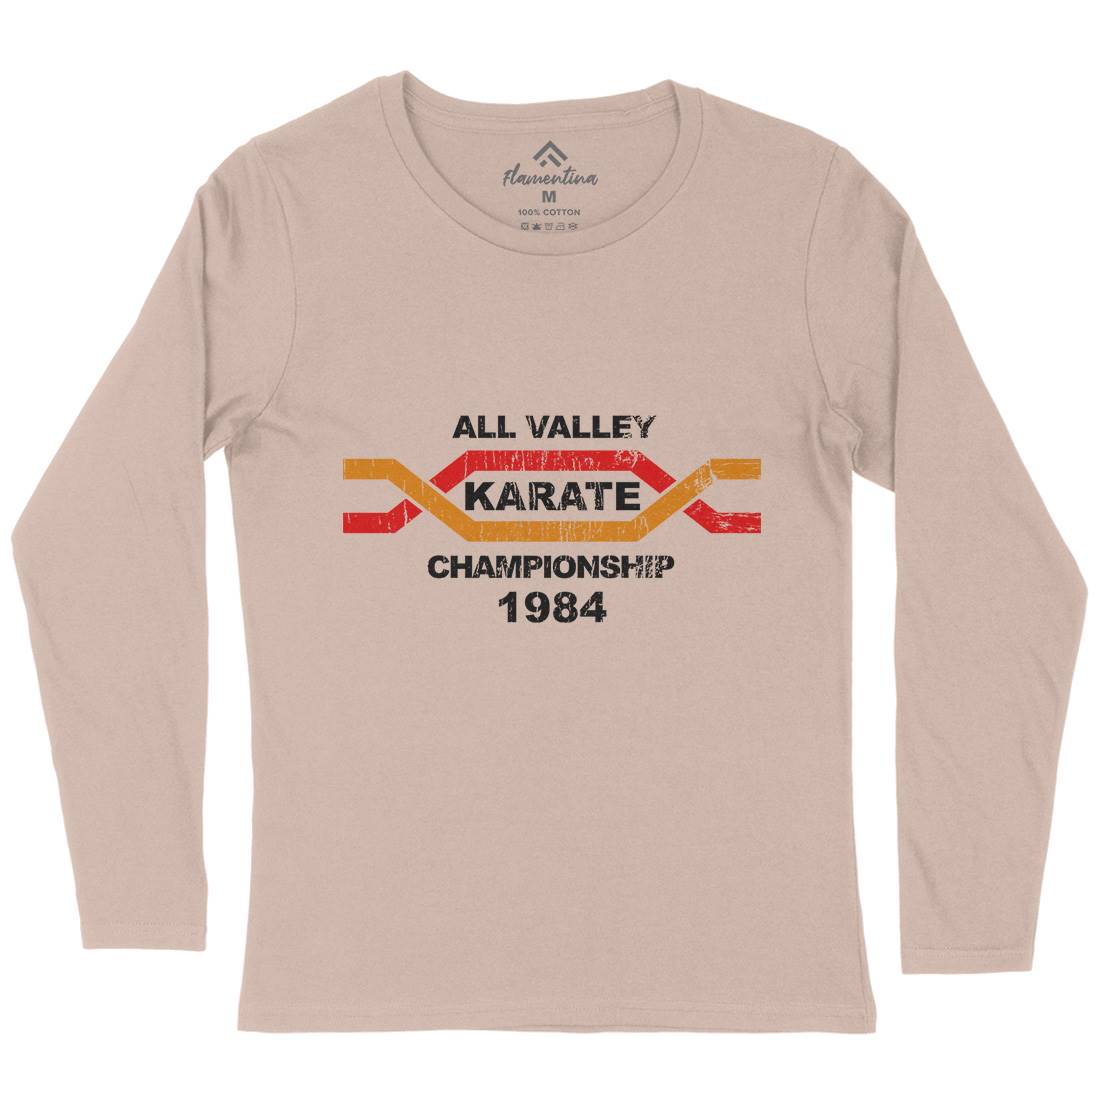 All Valley Womens Long Sleeve T-Shirt Sport D251